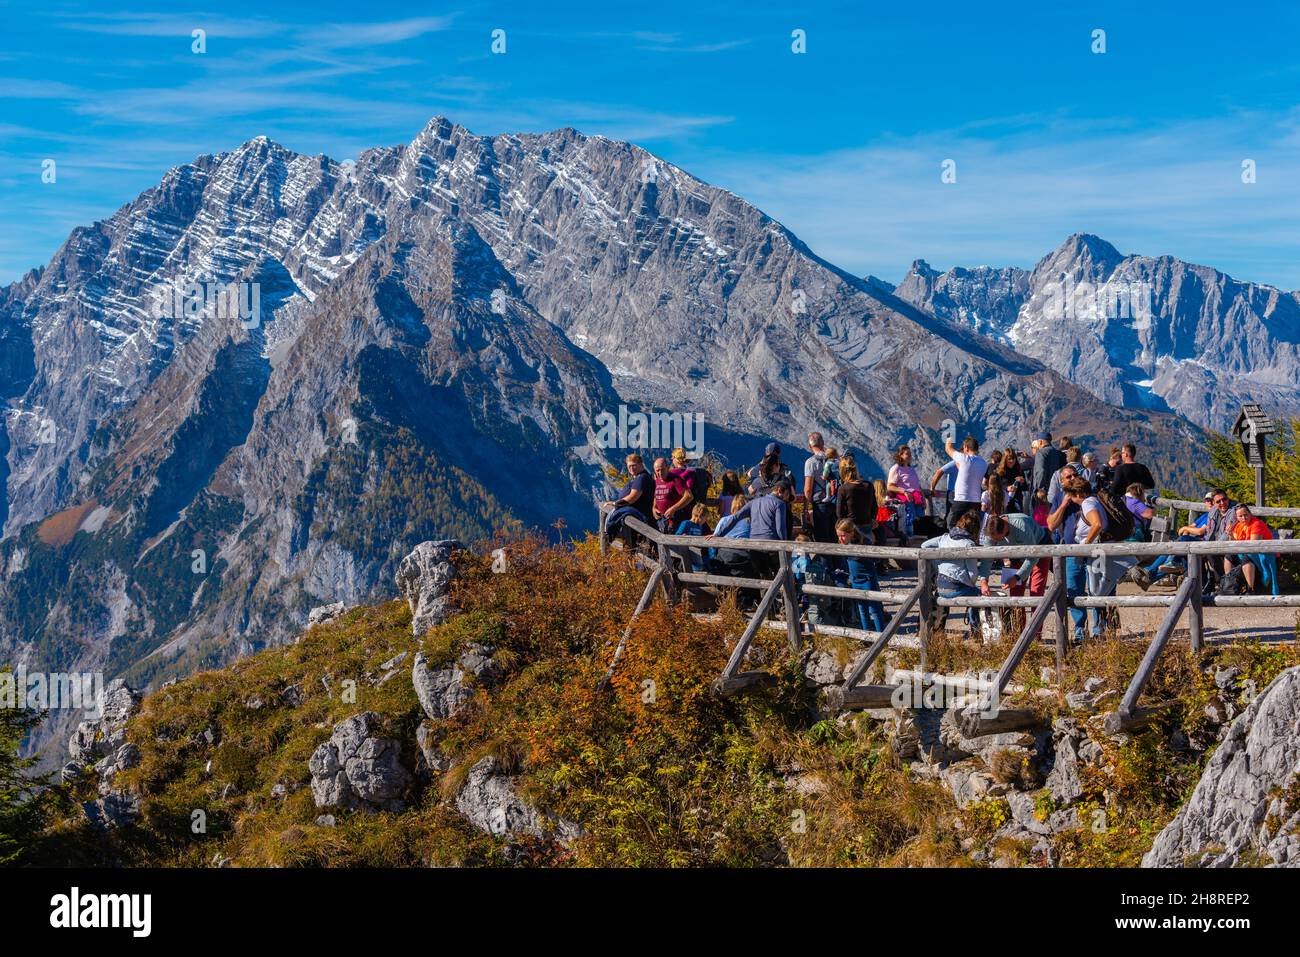 Ammirando il platformsubito sotto la cima di Jenner sopra l'altopiano di Jenner a circa 1800m s.l.m., le Alpi Bavaresi, l'alta Baviera, la Germania meridionale Foto Stock